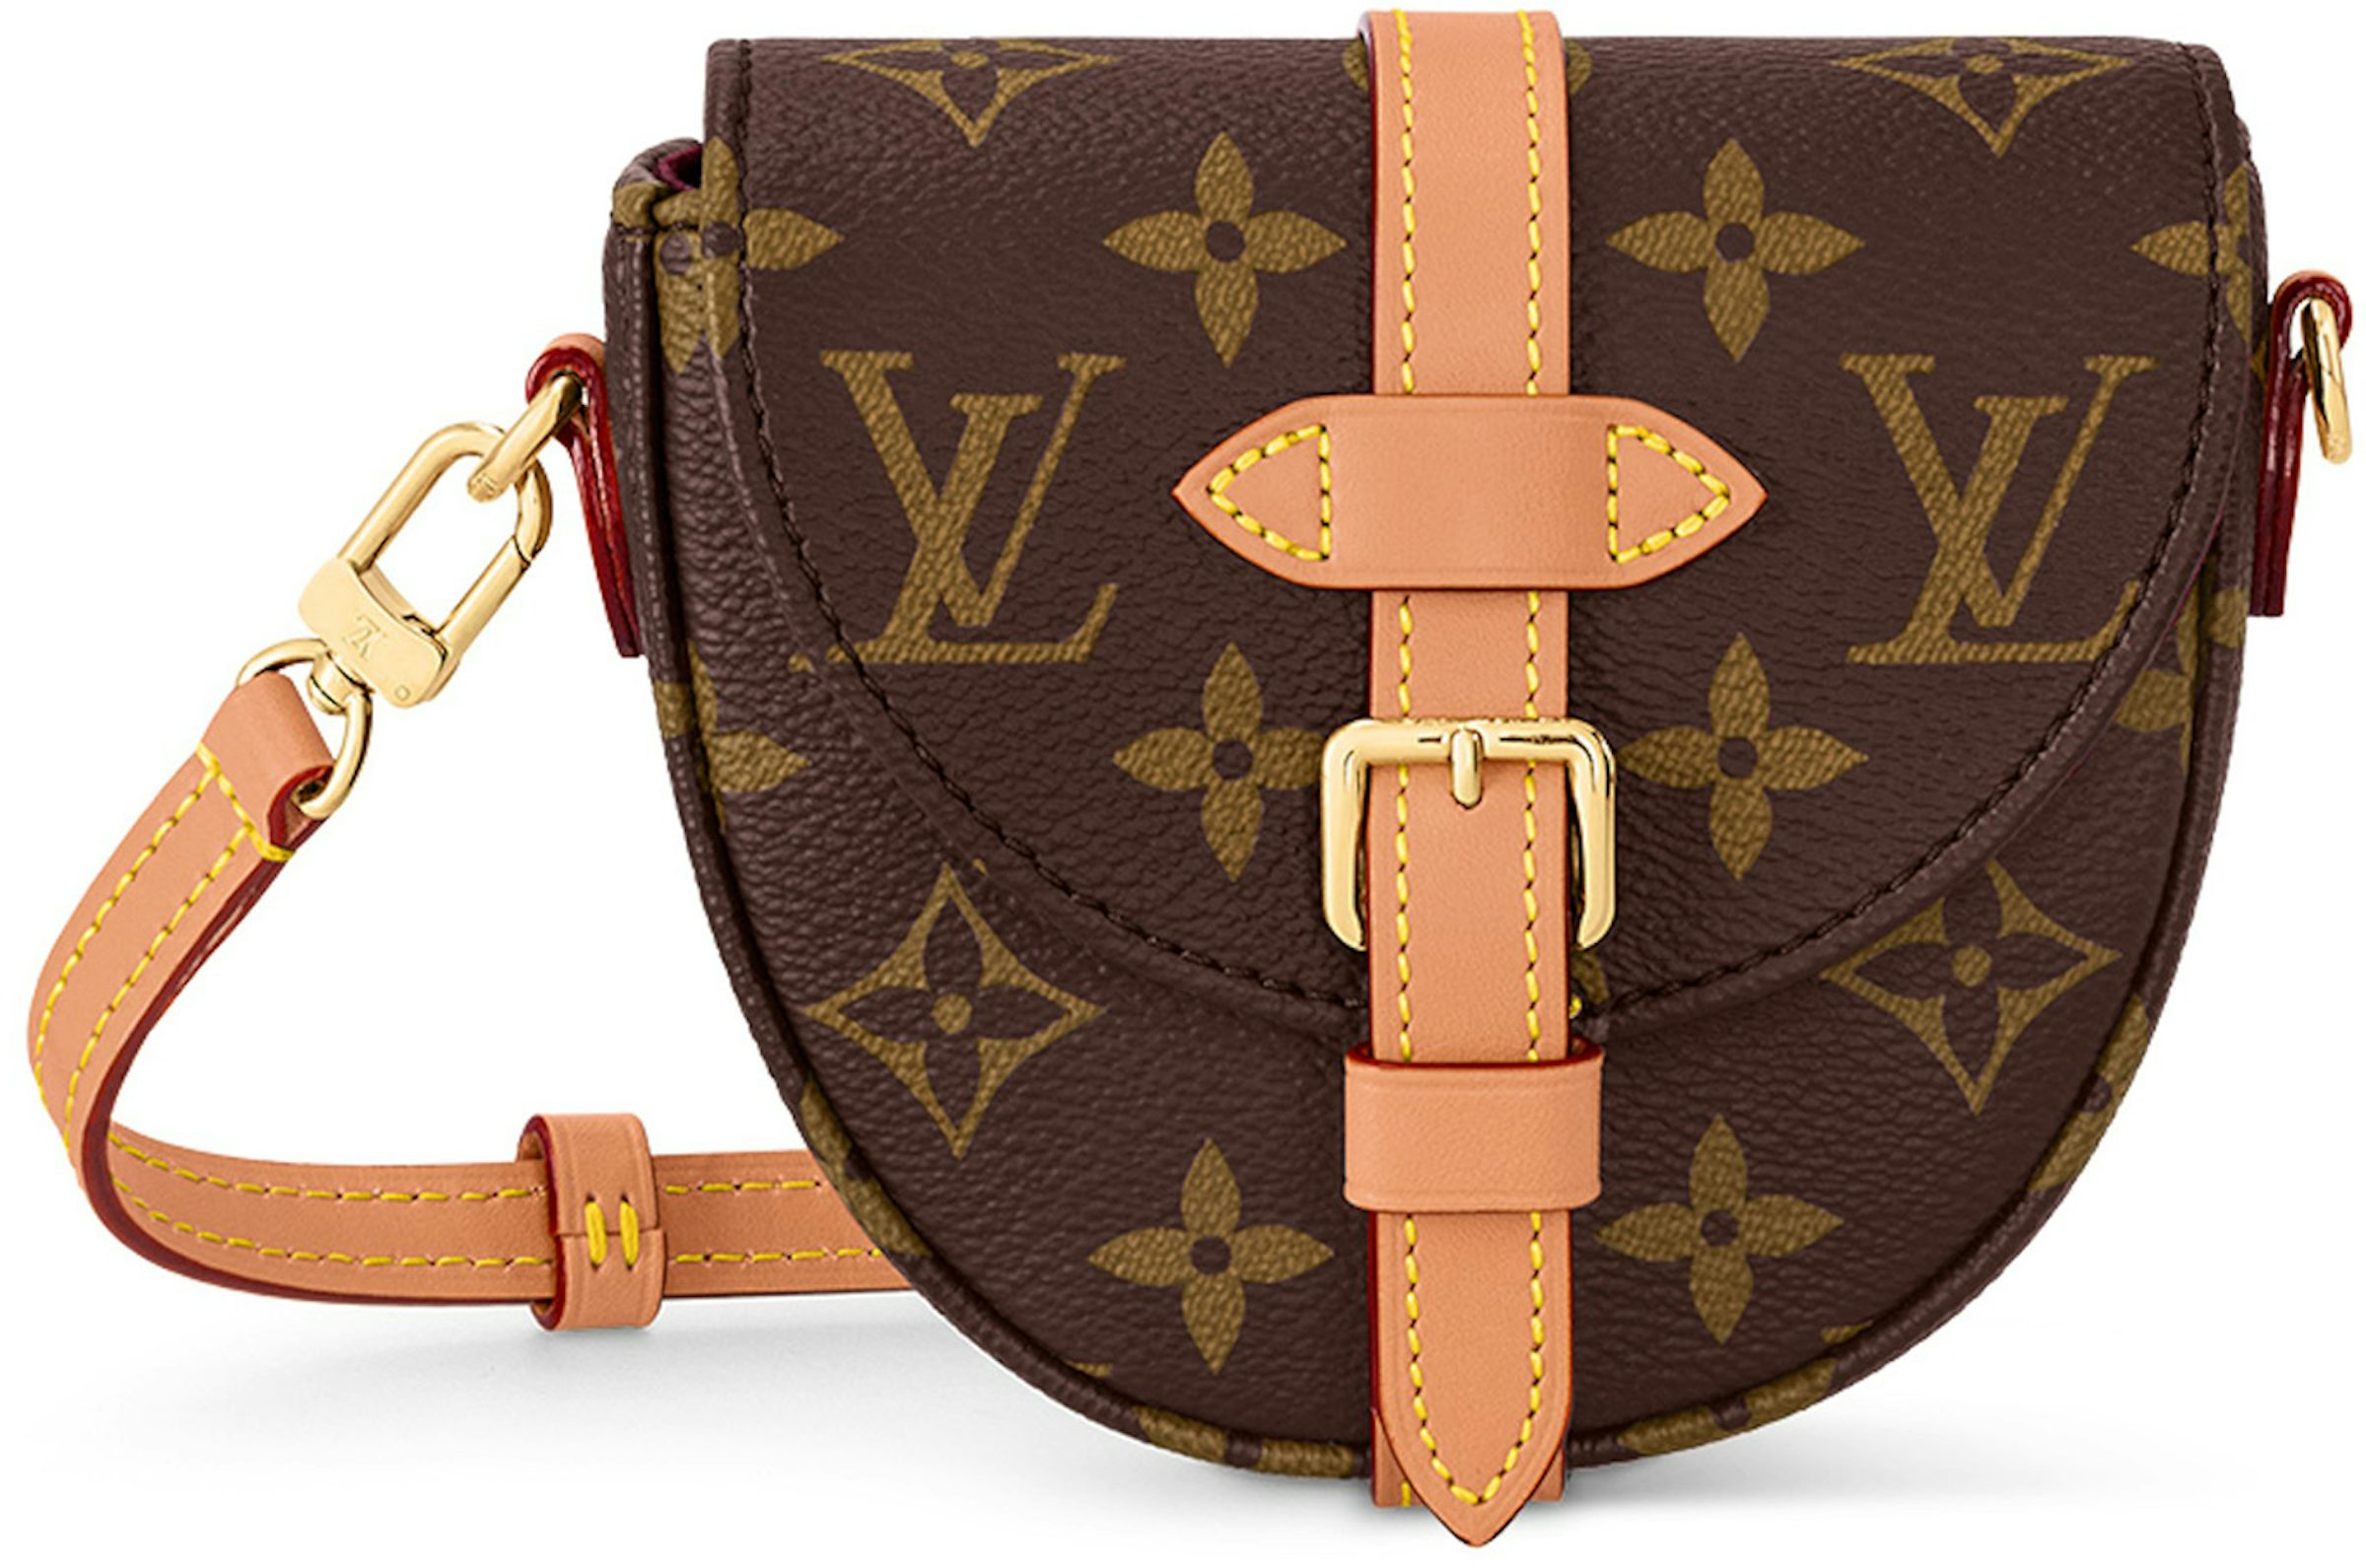 Louis Vuitton Monogram Canvas Micro Chantilly Handbag with Gold